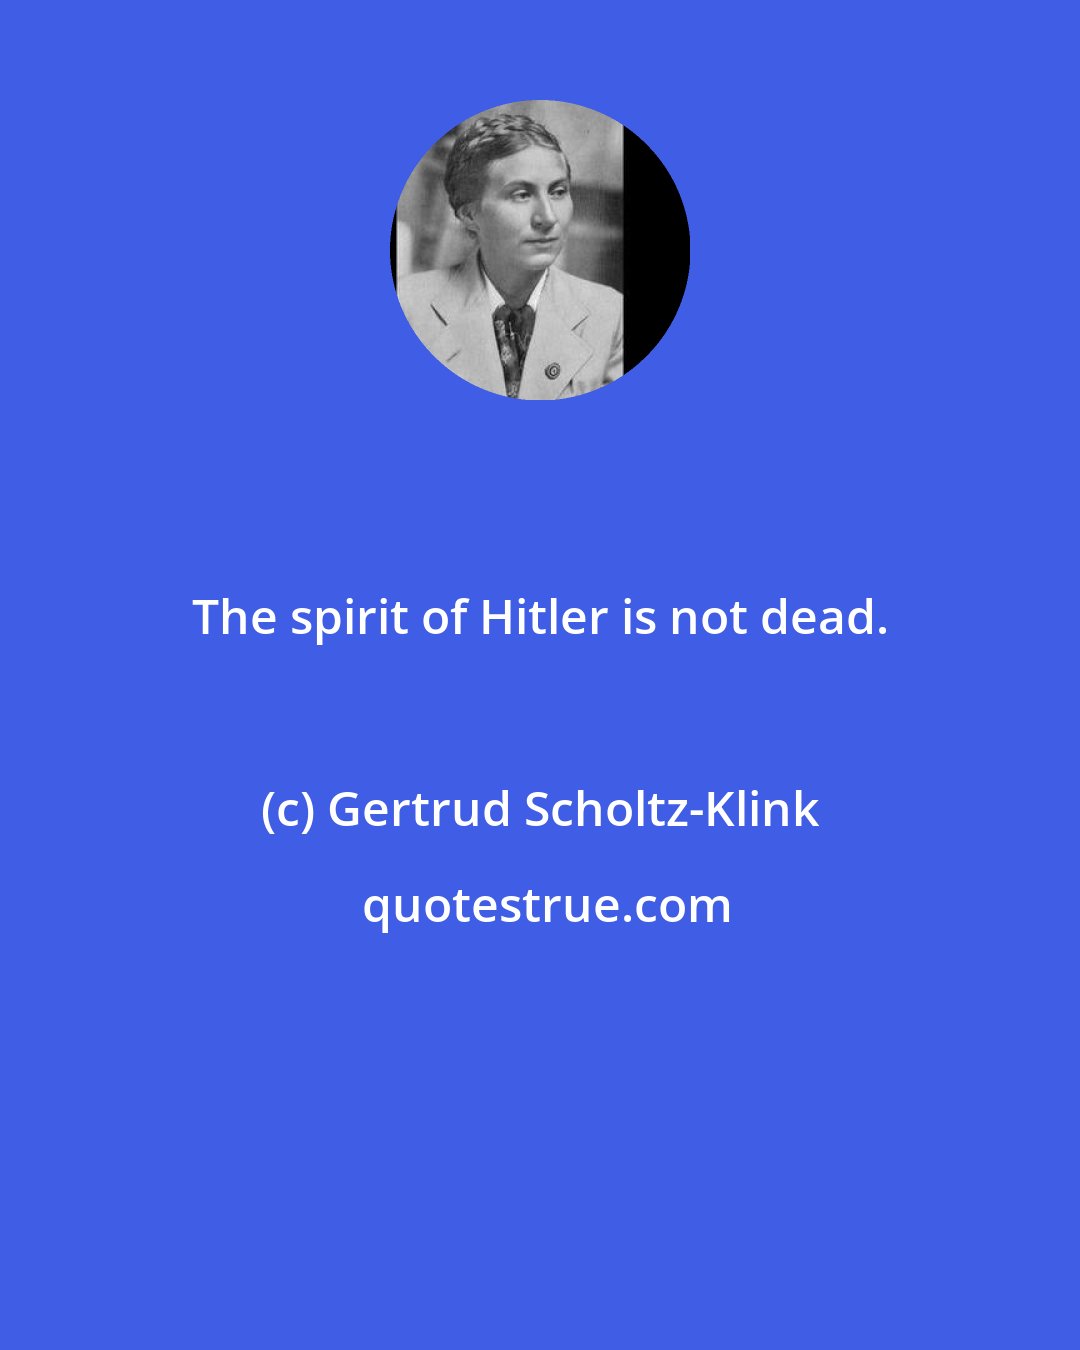 Gertrud Scholtz-Klink: The spirit of Hitler is not dead.